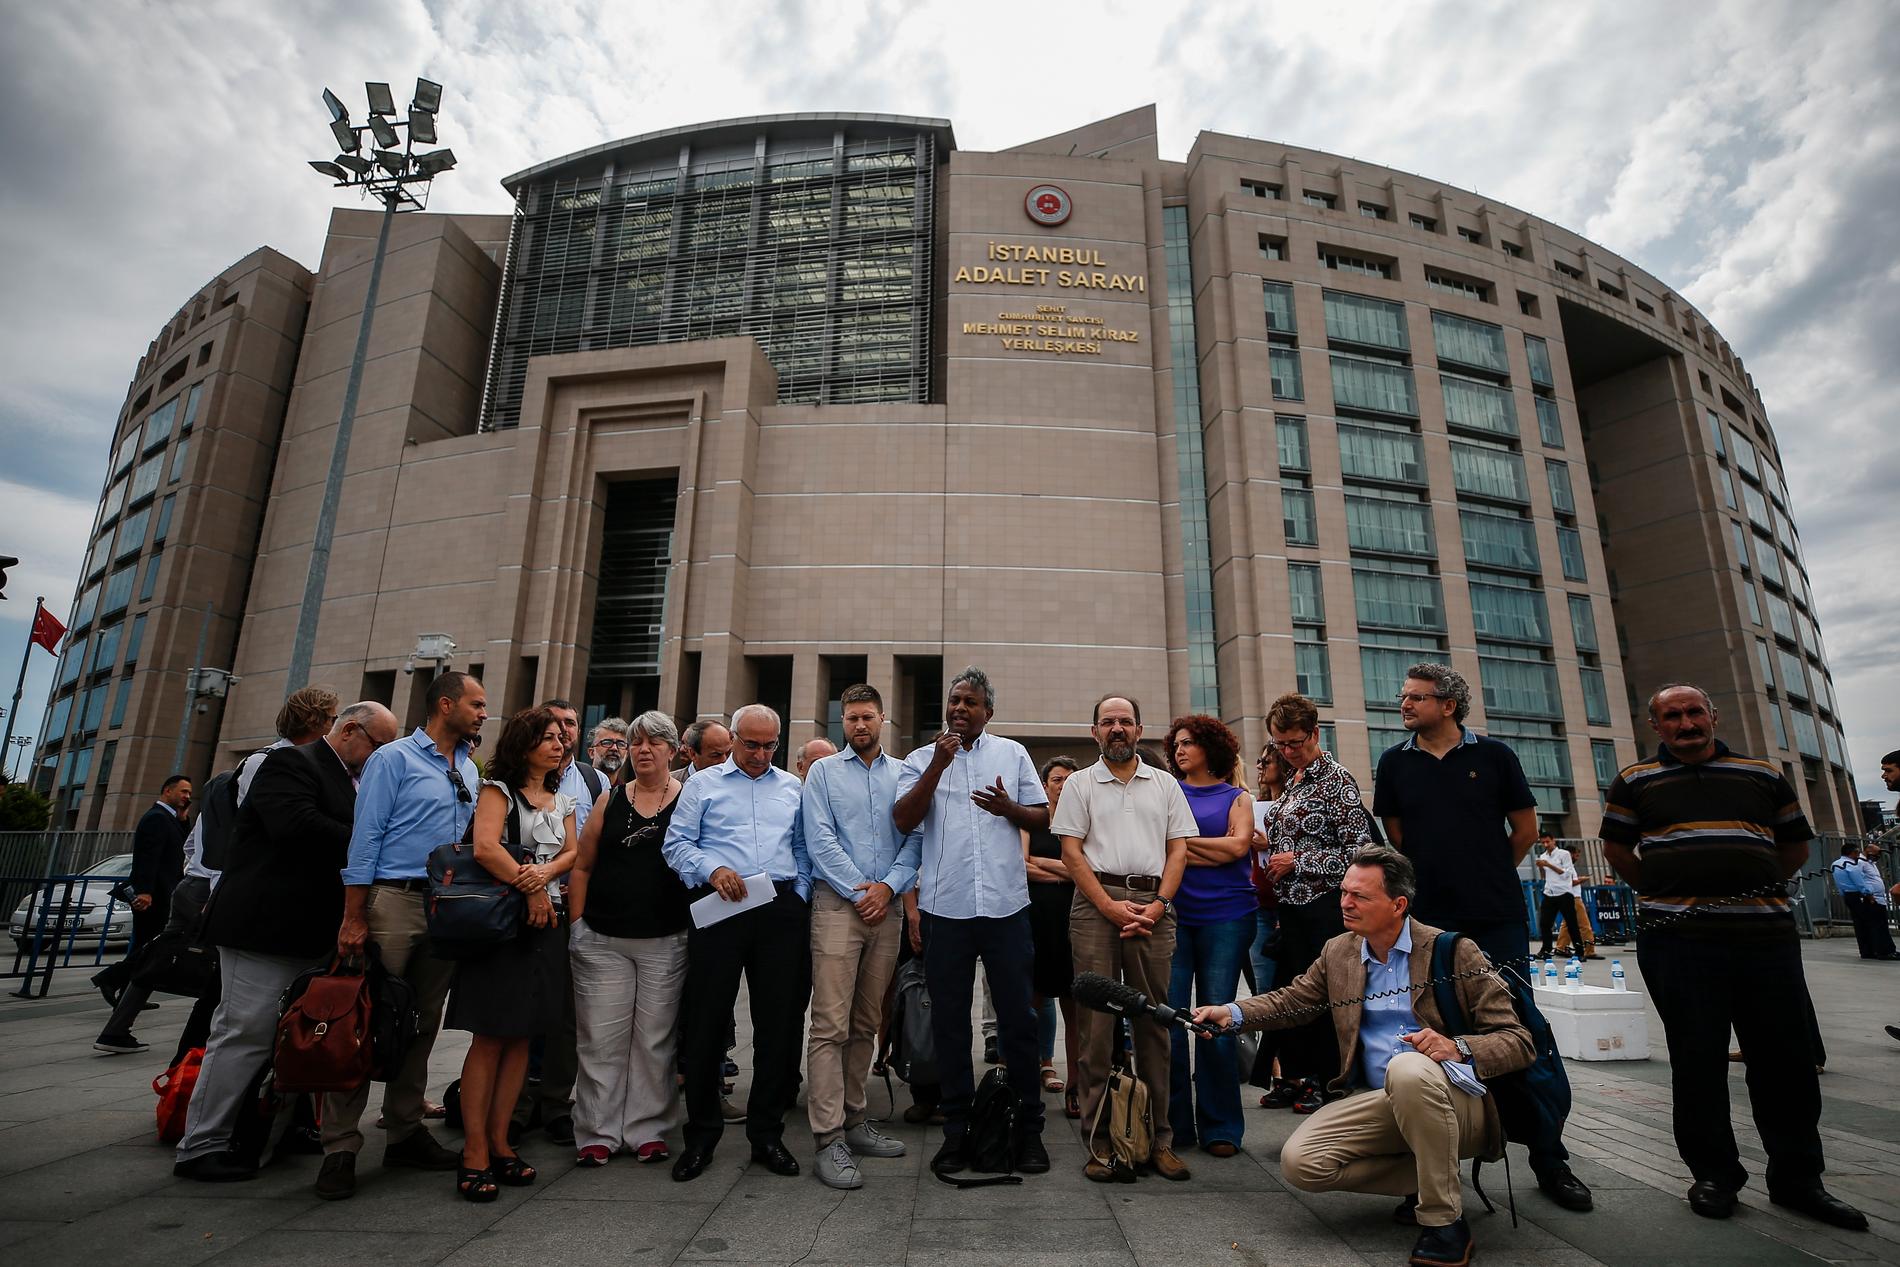 Amnestys dåvarande generalsekreterare Salil Shetty, i mitten, under en presskonferens i juni utanför domstolen i Istanbul där rättegången mot Taner Kilic hållits.